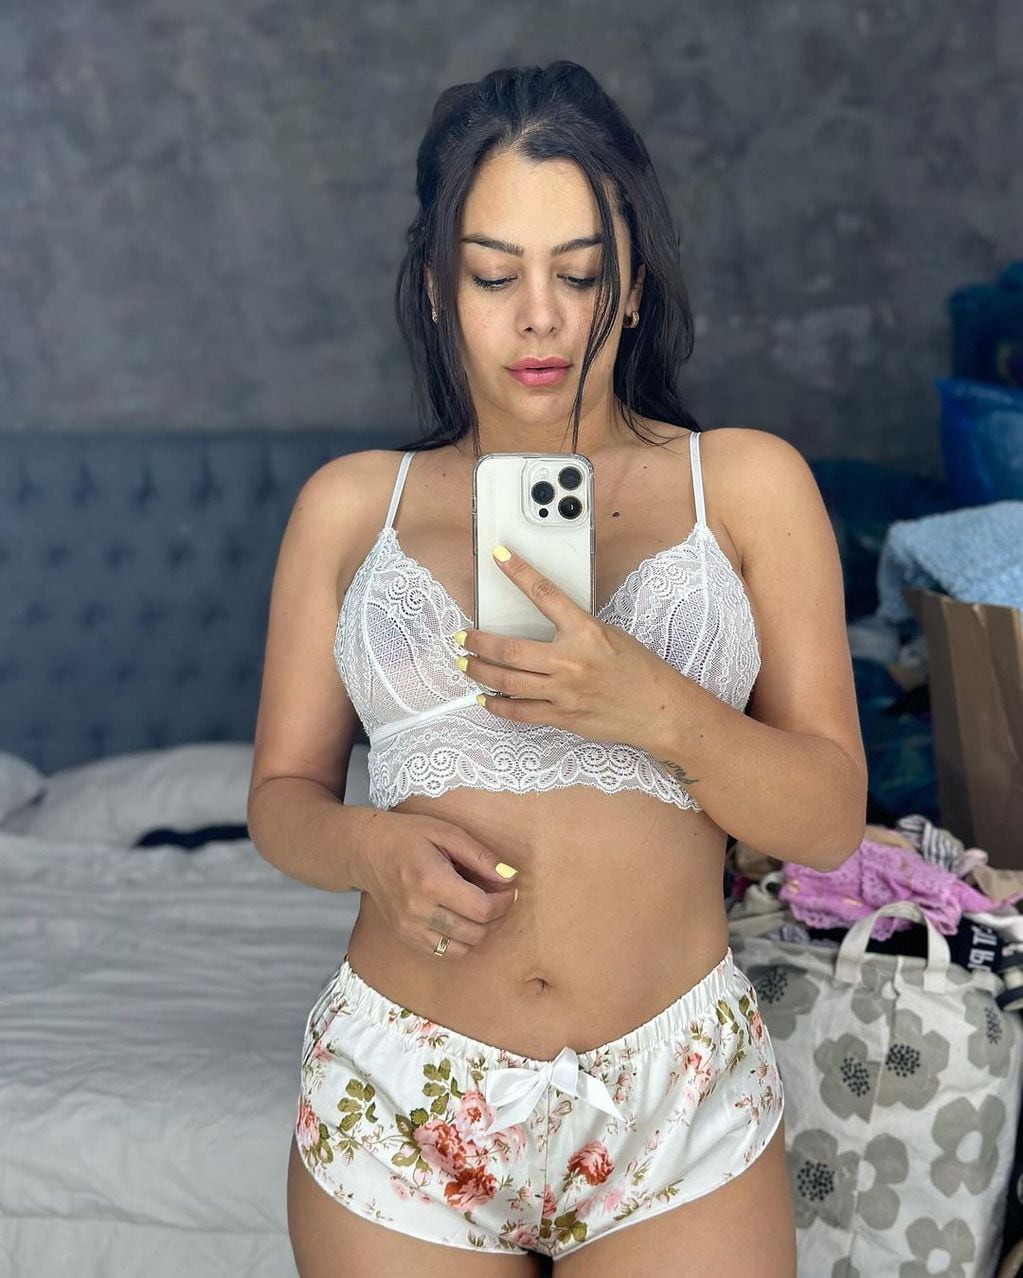 Antes de ir a dormir, Larissa Riquelme pasó por Instagram y compartió unas fotos en ropa interior.